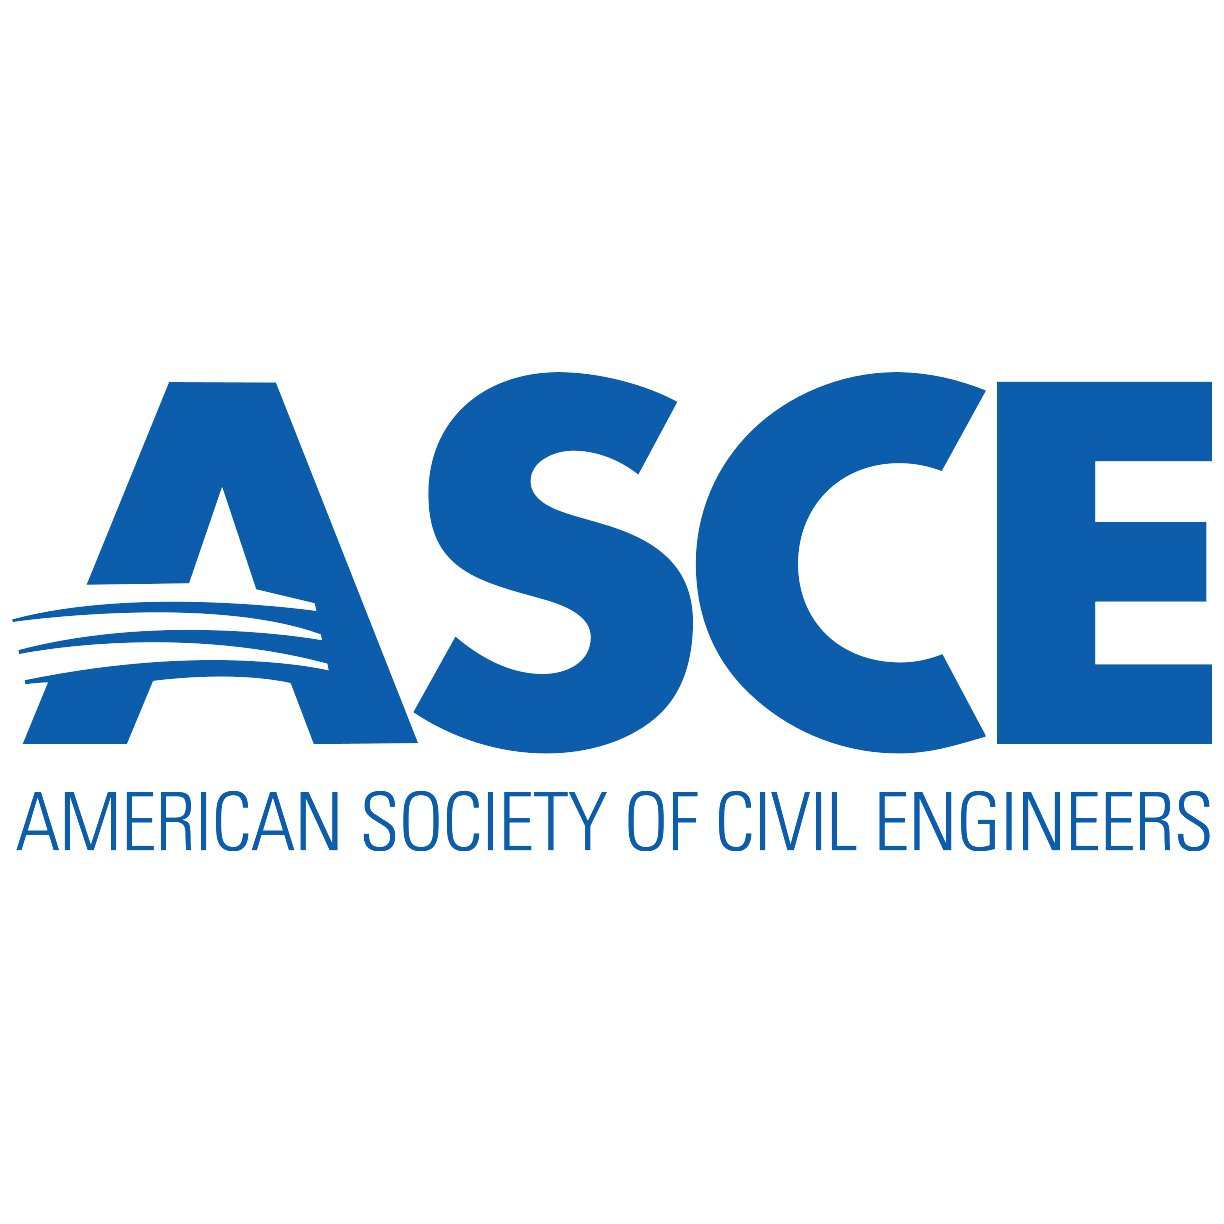 American Society of Civil Engineers copy.jpg